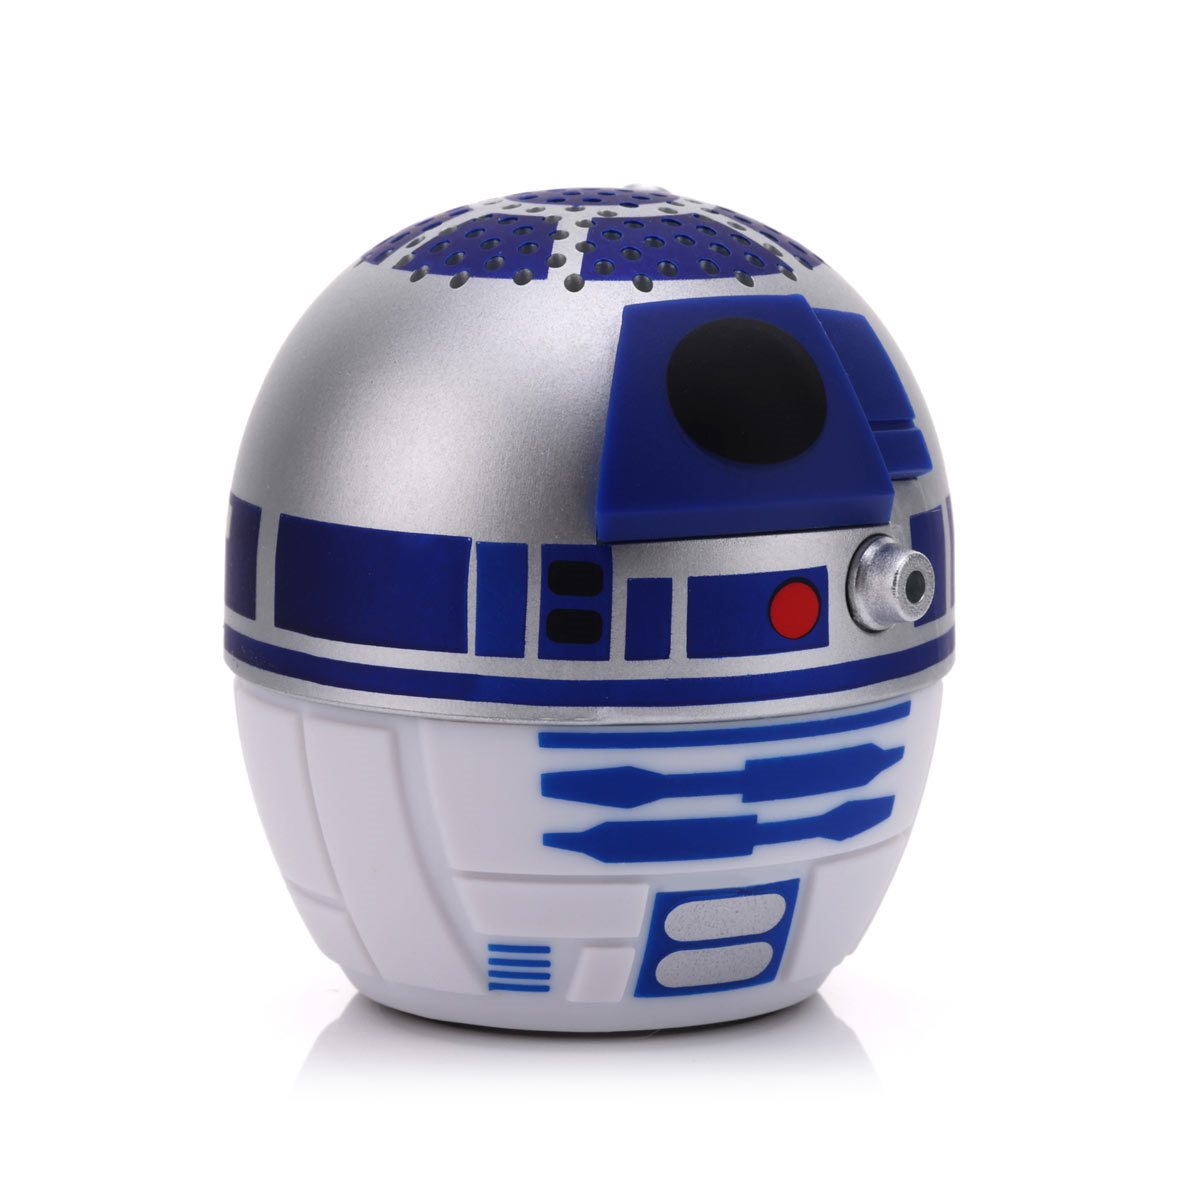 Bitty Boomers Star Wars R2-D2 Mini Bluetooth Speaker 